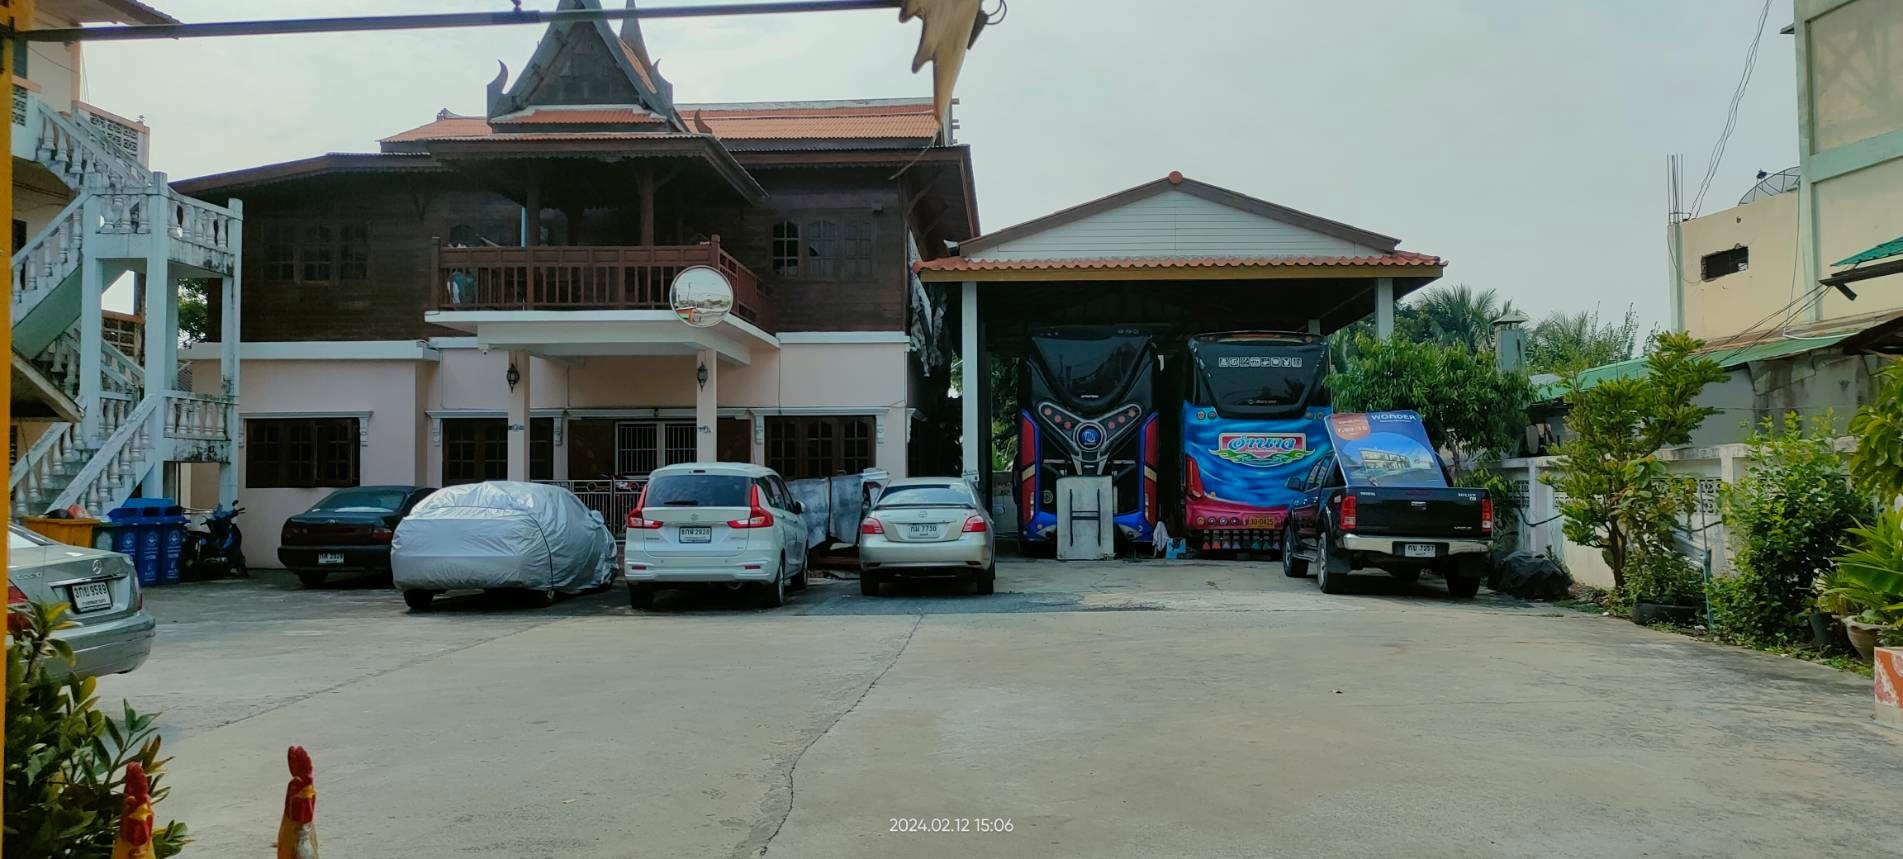 TM650195 ขายบ้านพร้อมเรือนไทยขนาด 286 ตารางวา ริมถนนราชพฤกษ์ก่อนถึงวงเวียนพระราม 5 รูปที่ 1